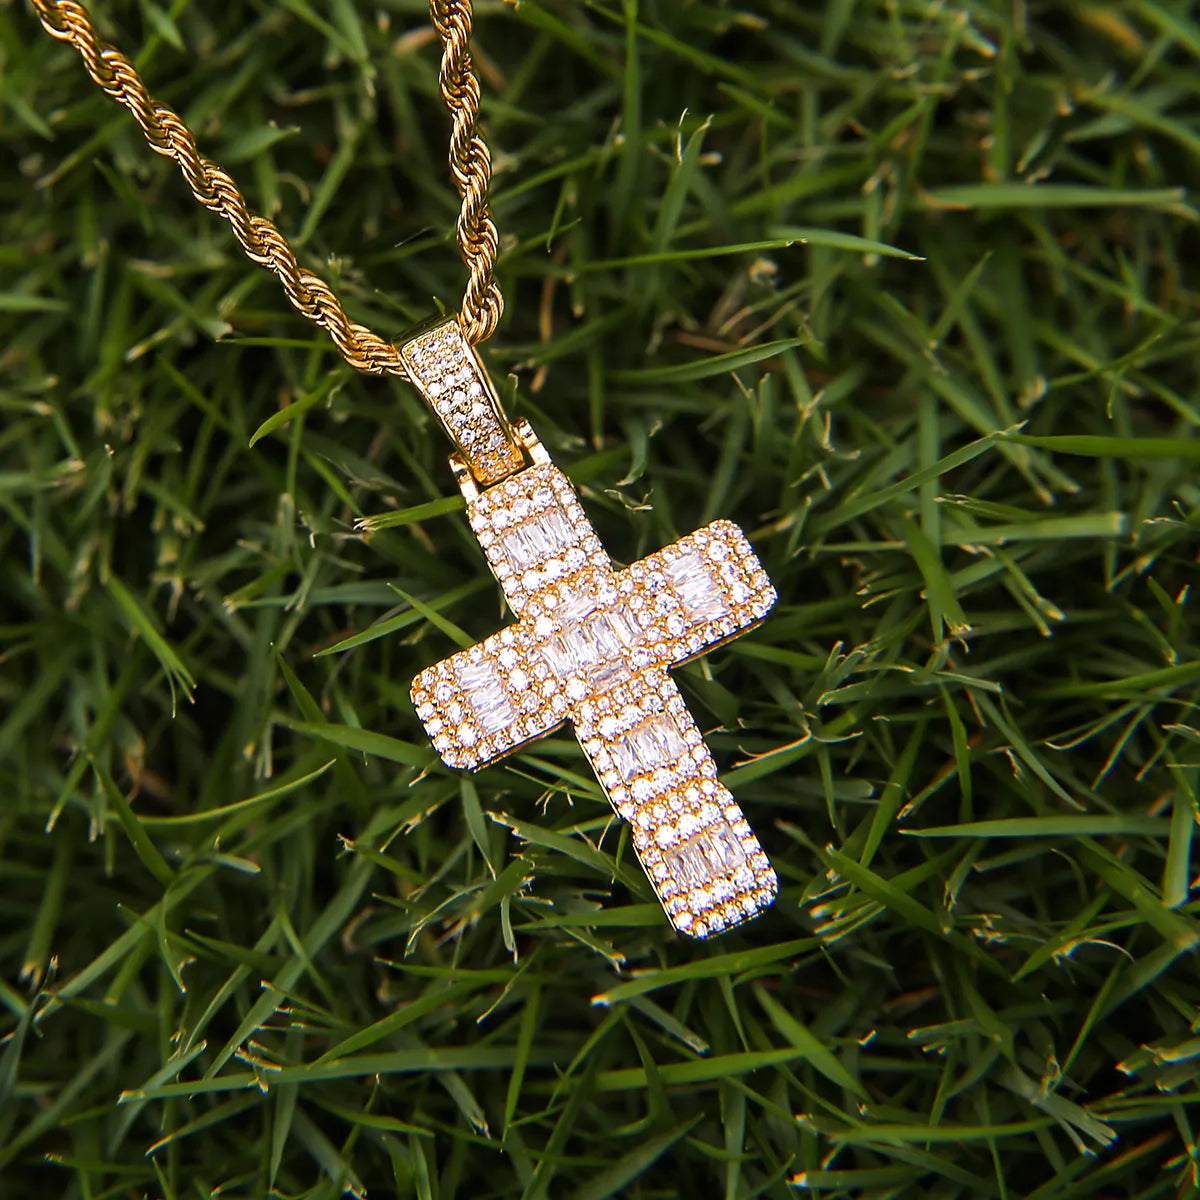 Square Baguette Cross Pendant Necklace